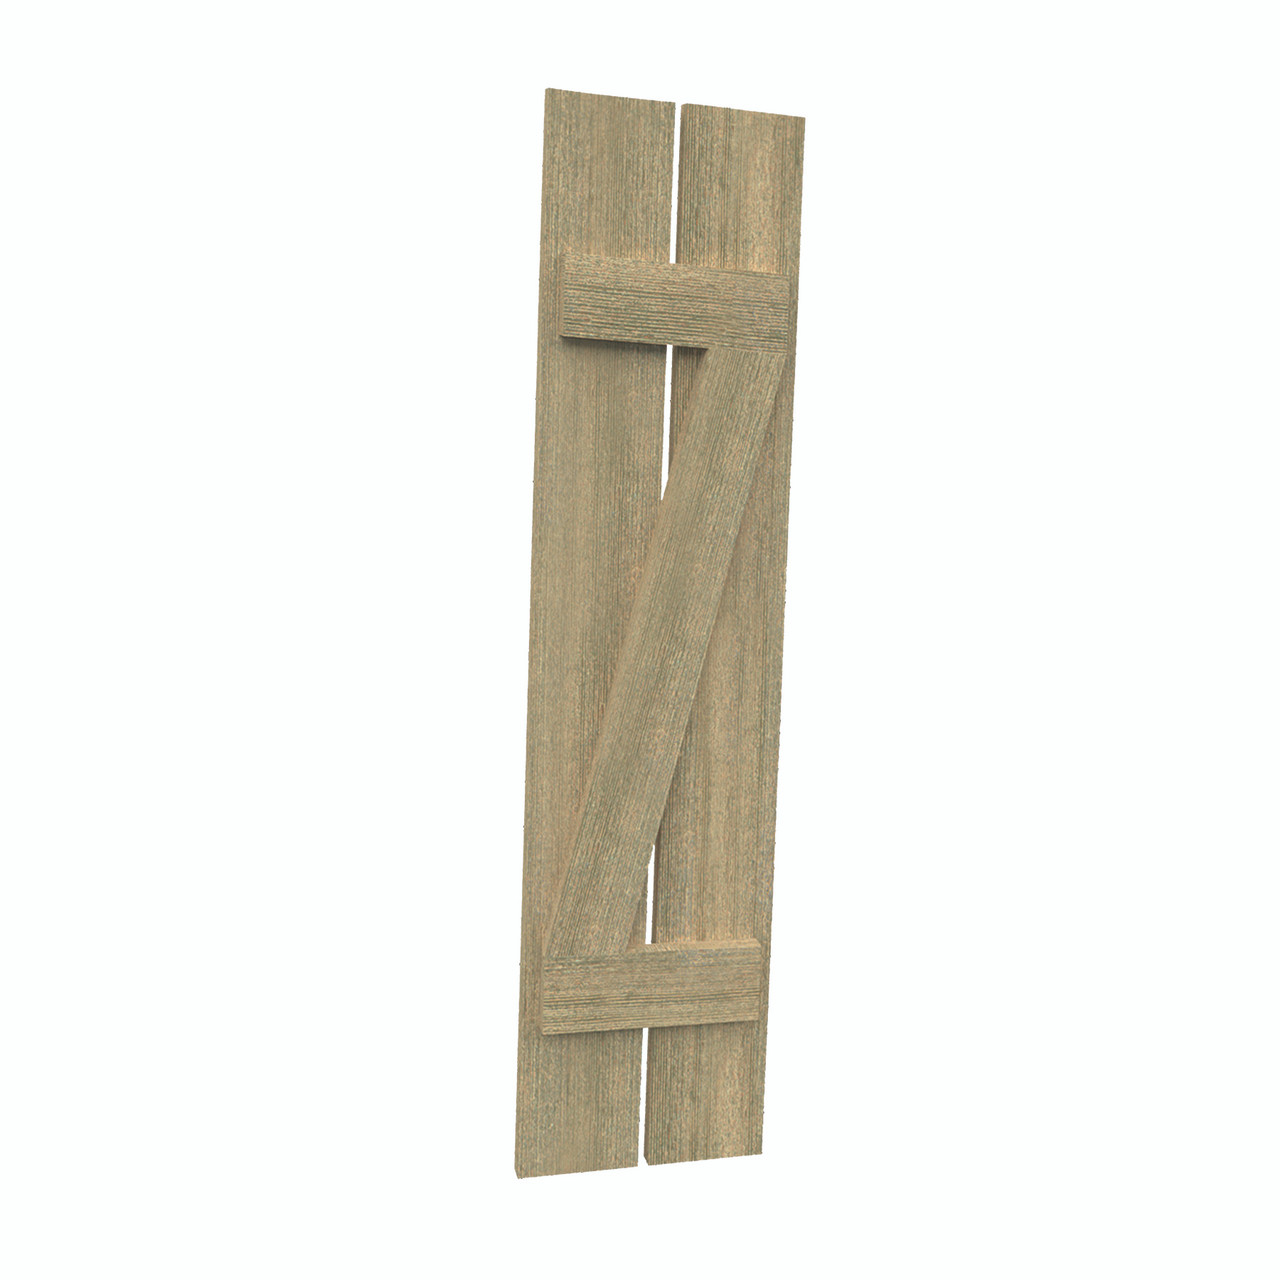 12 inch by 89 inch Plank Shutter with 2-Plank, Z-Batten